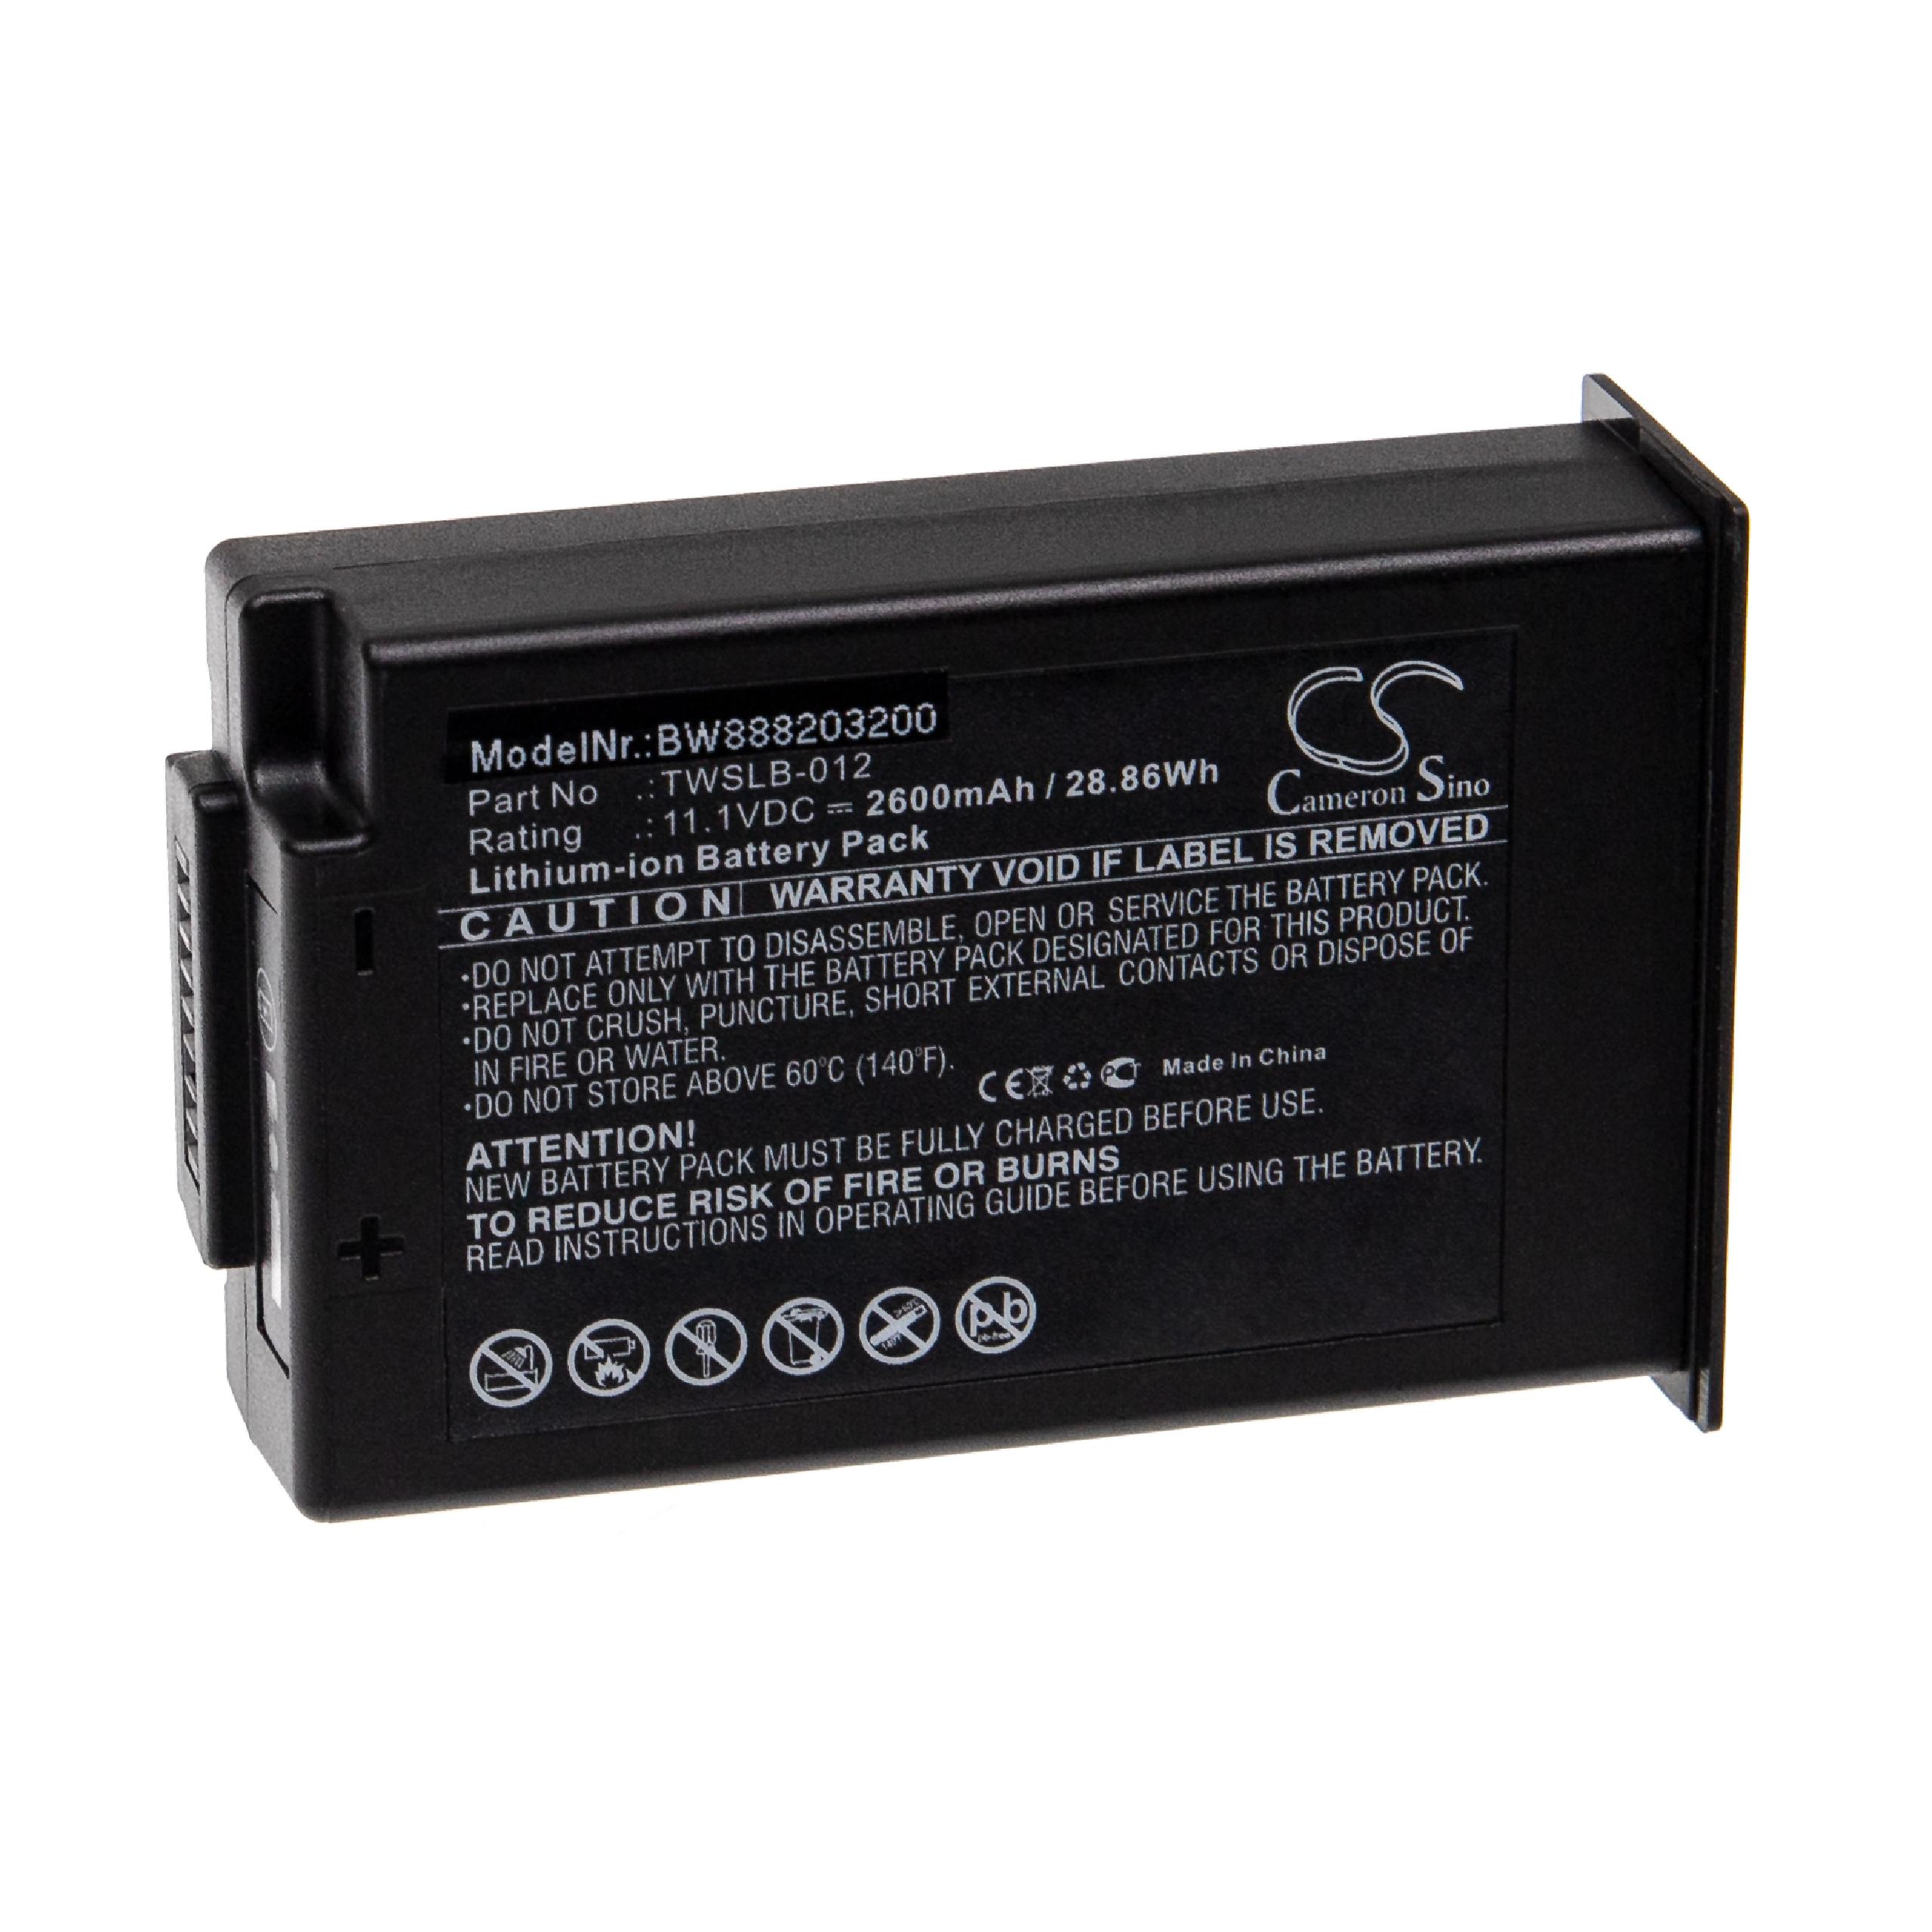 Batterie remplace Edan TWSLB-012 pour appareil médical - 2600mAh 11,1V Li-ion